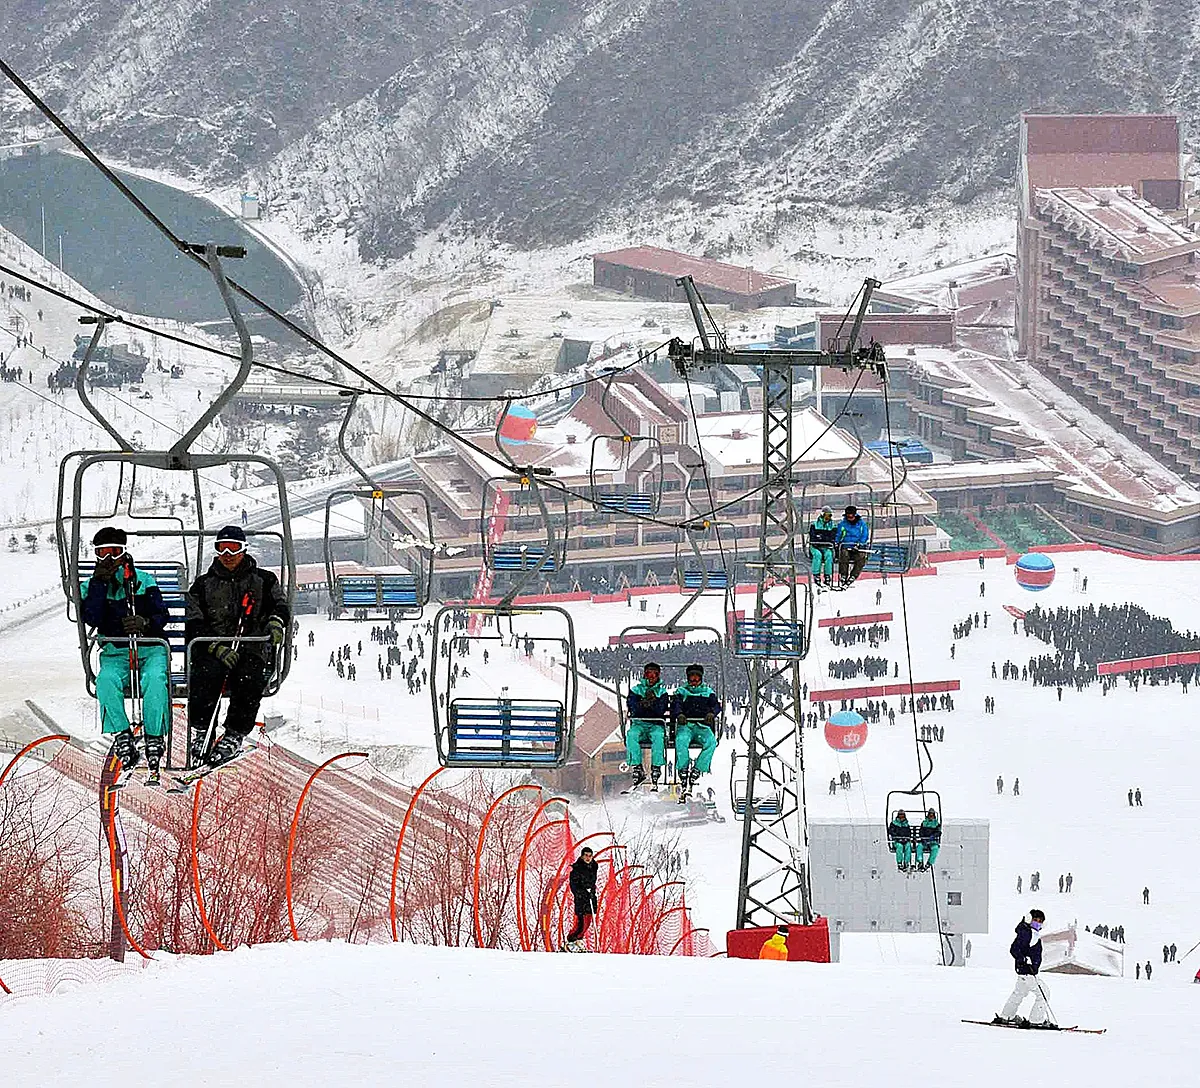 De pistas de esquí de lujo para turistas rusos a vender pestañas postizas: Kim Jong-un busca ingresos para financiar sus misiles